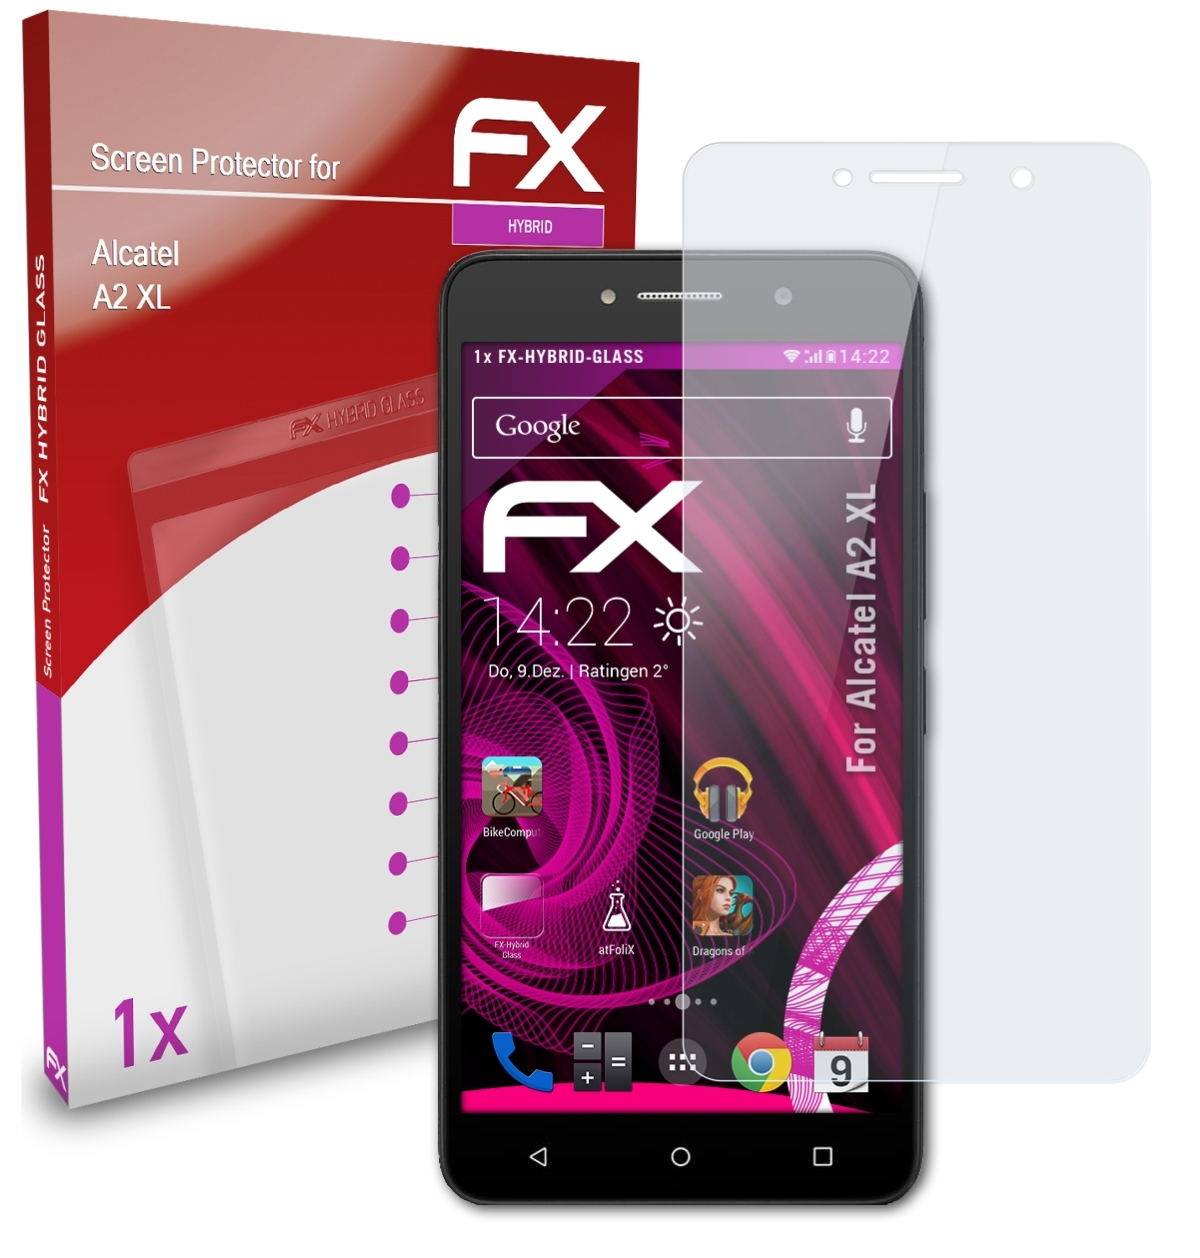 XL) A2 ATFOLIX FX-Hybrid-Glass Alcatel Schutzglas(für